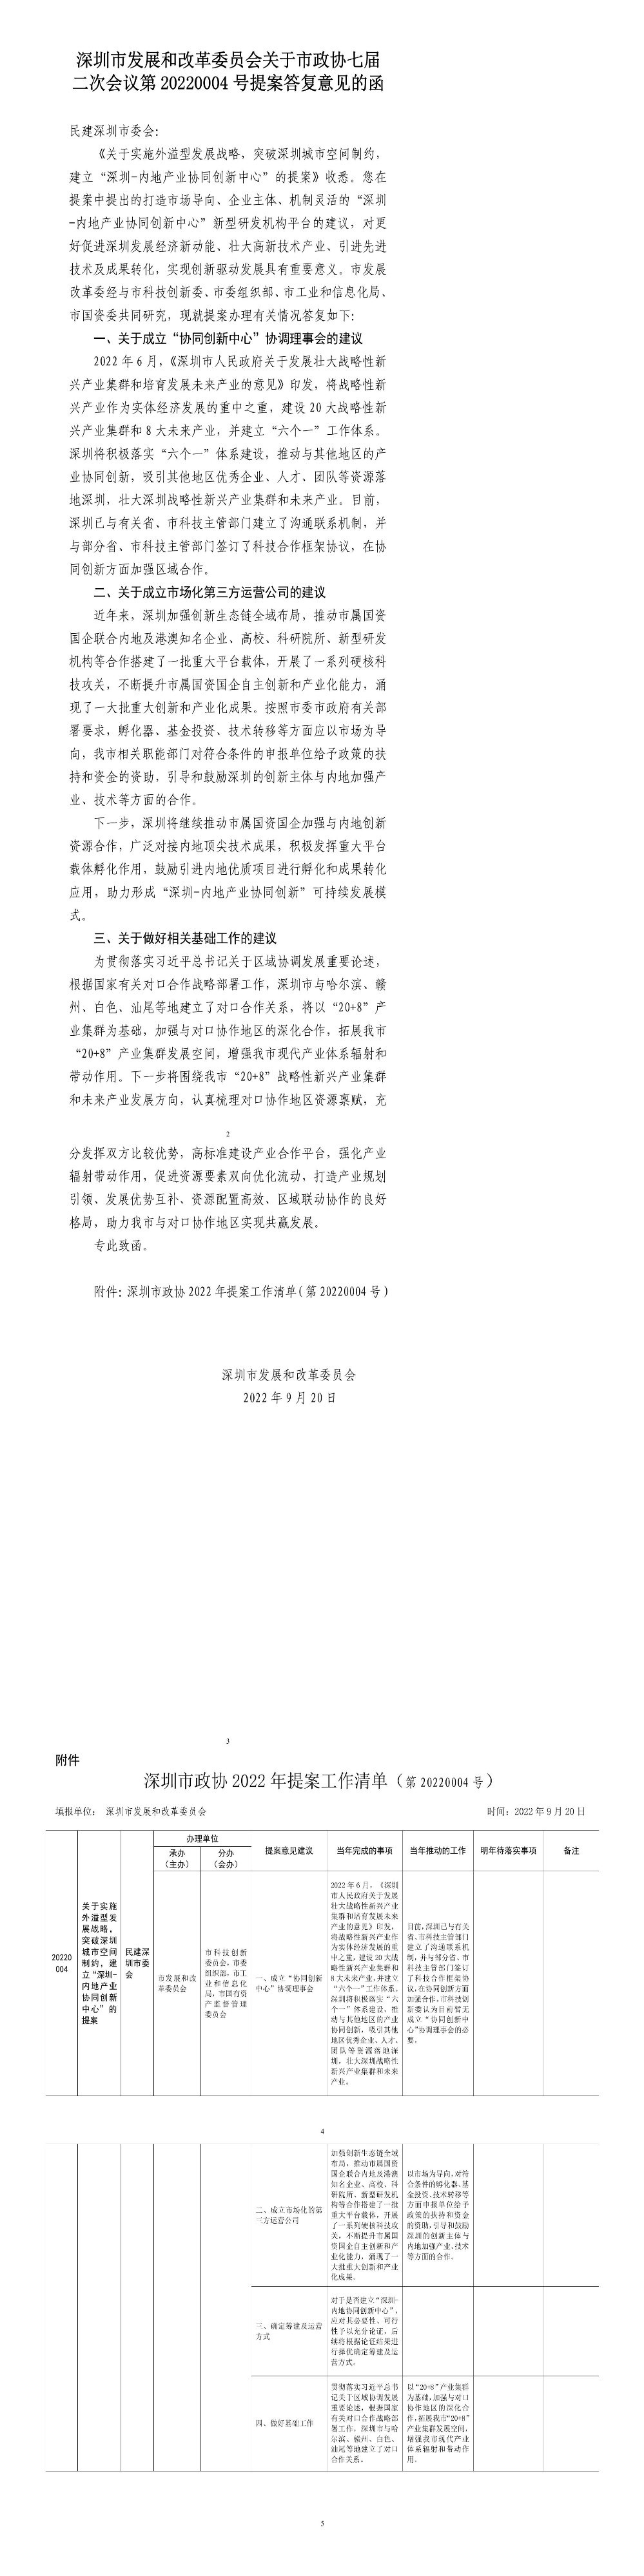 深圳市发展和改革委员会关于市政协七届二次会议第20220004号提案答复意见的函.jpg